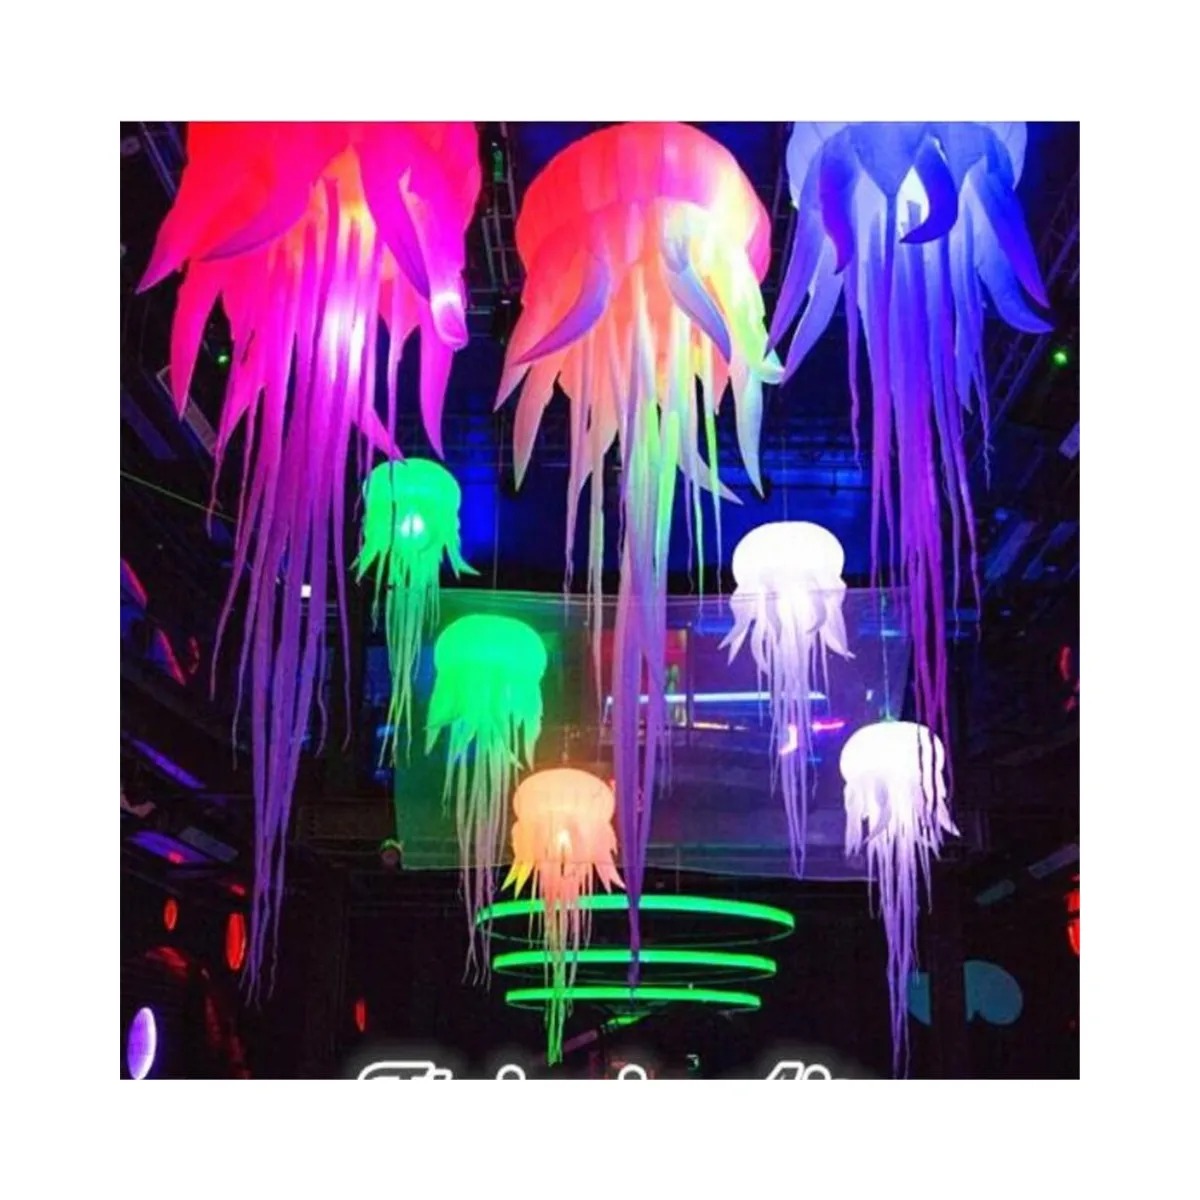 Venda quente água-viva inflável com iluminação LED de boa qualidade para decoração de festas, bares e eventos